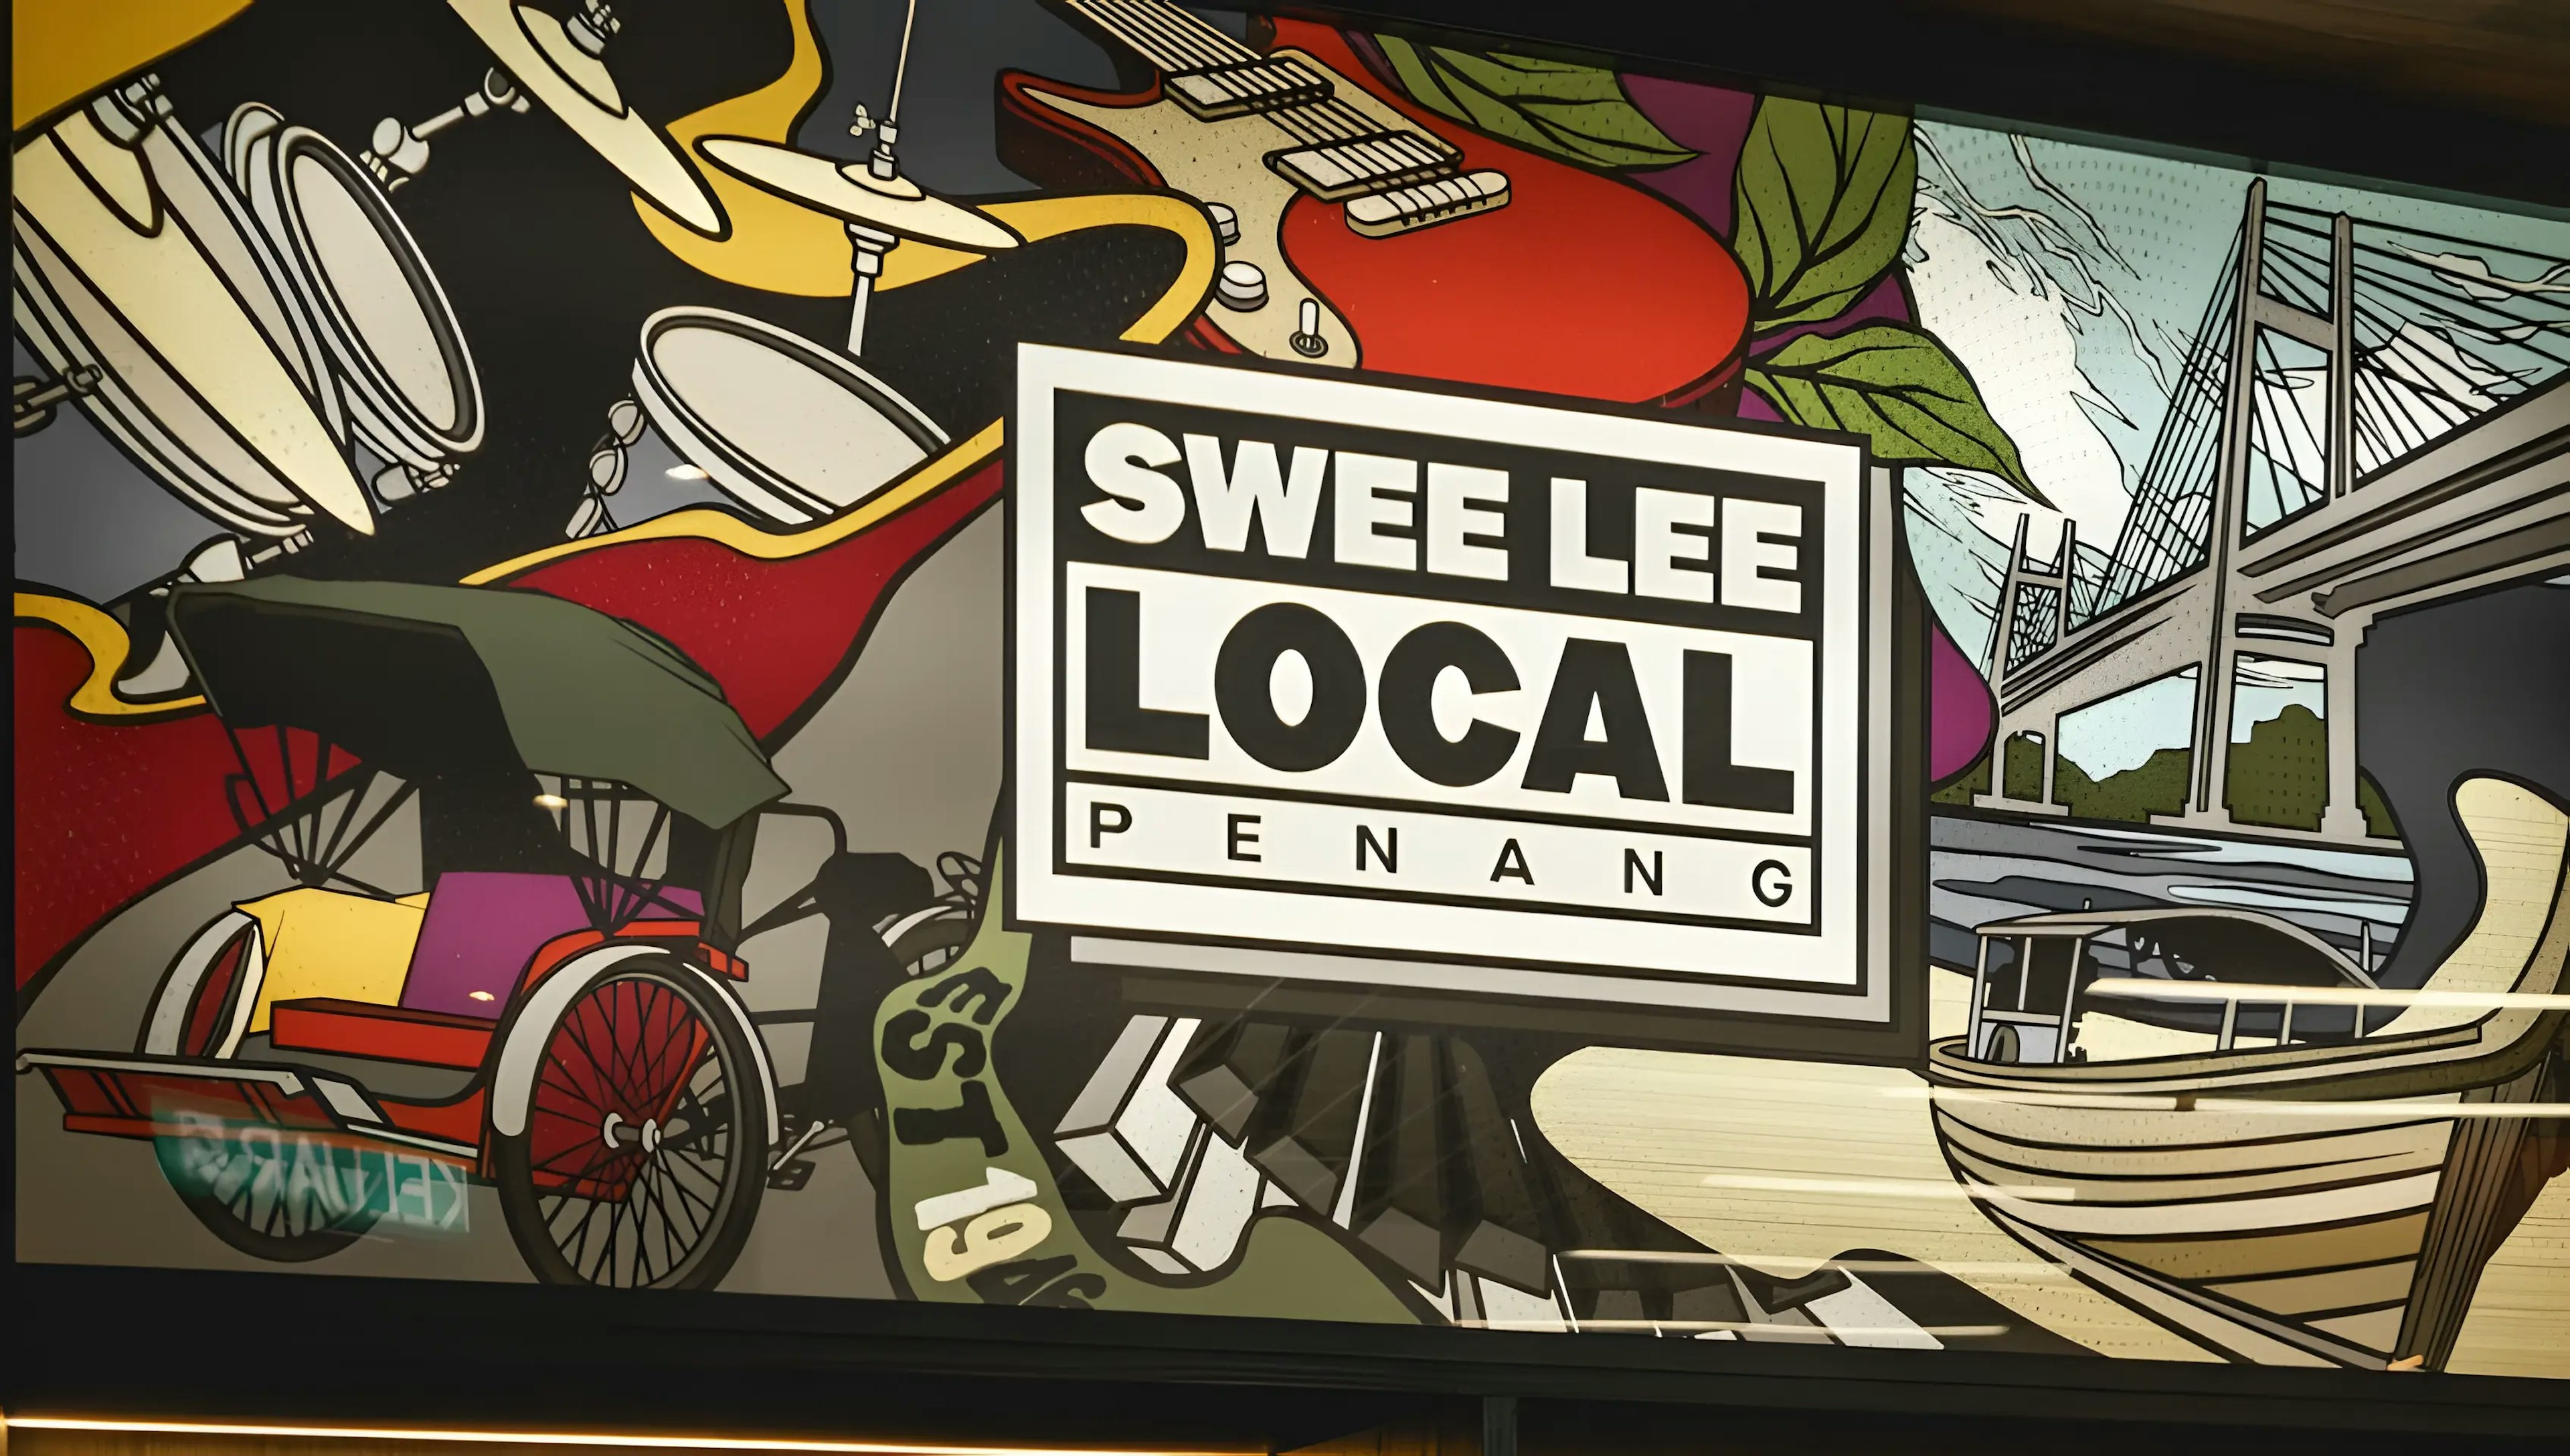 Swee Lee Local Penang